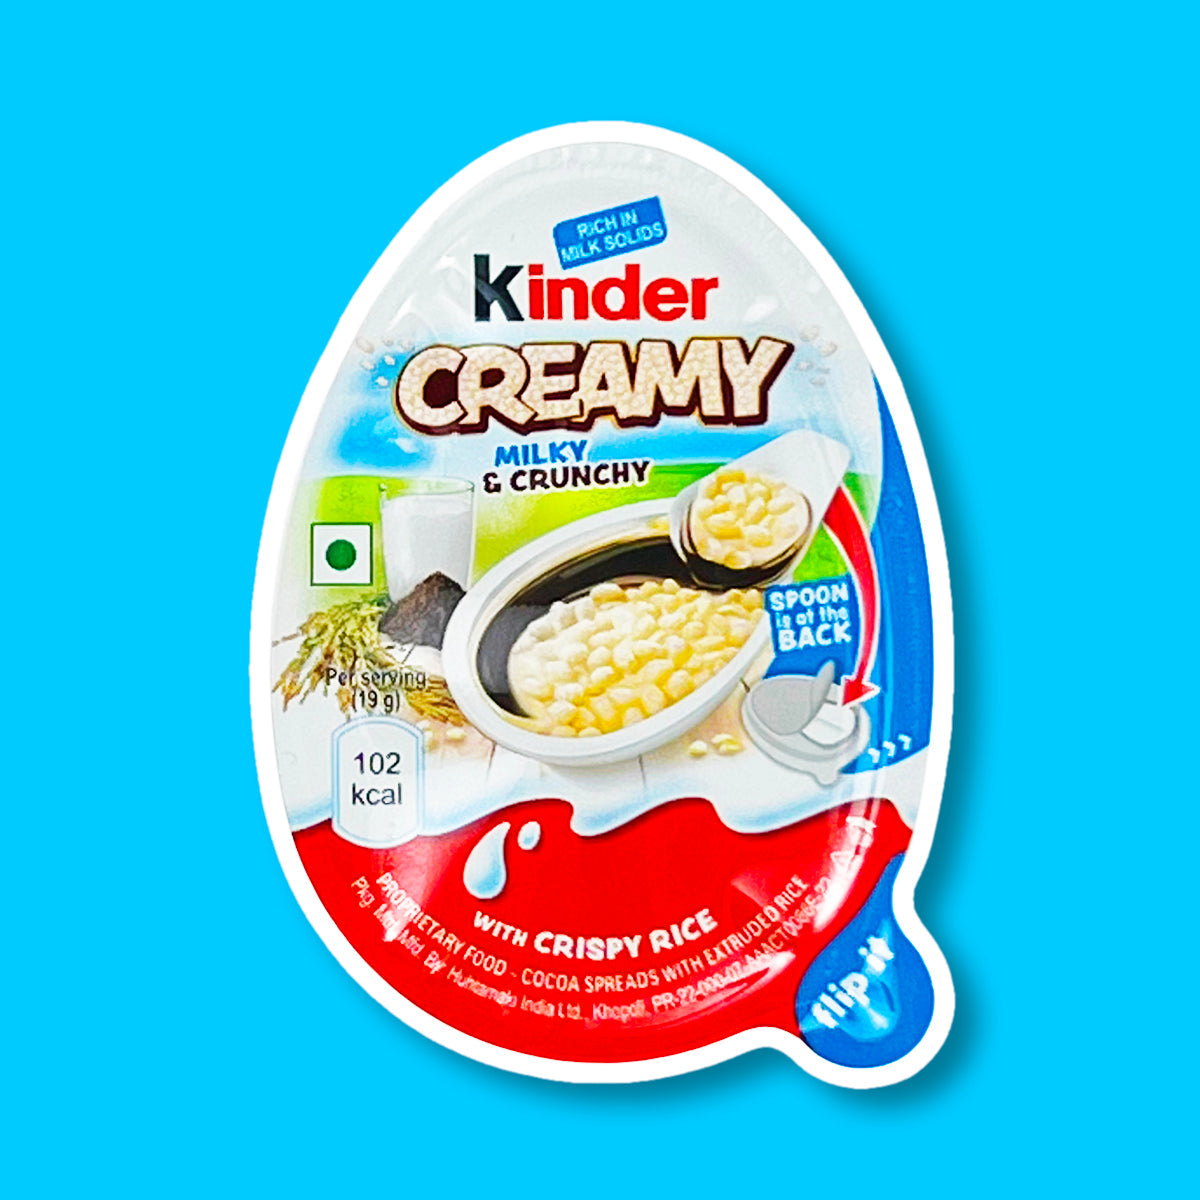 Un paquet blanc et orange sur fond bleu avec au centre un Kinder Creamy ouvert, on y voit le riz soufflé dans sa crème